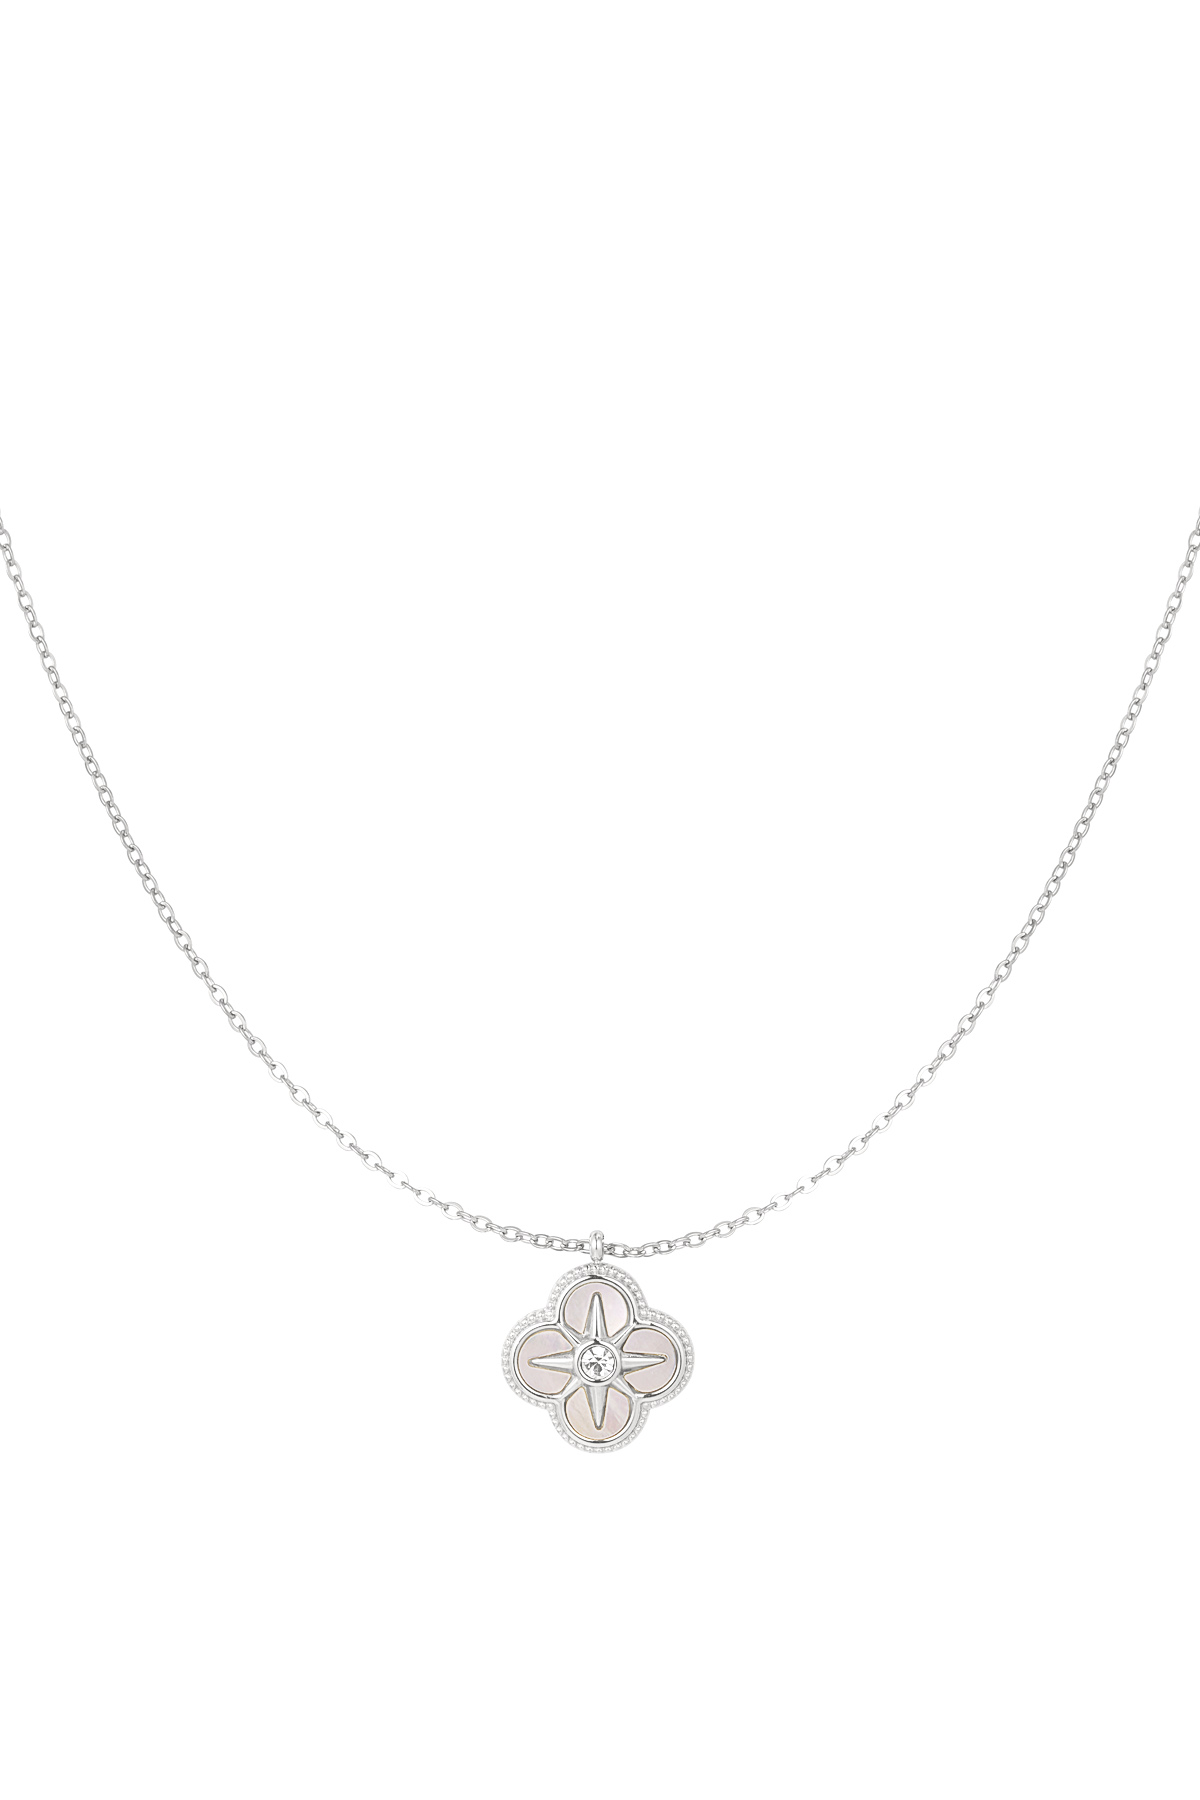 Halskette mit Blume und Stern - Silber h5 